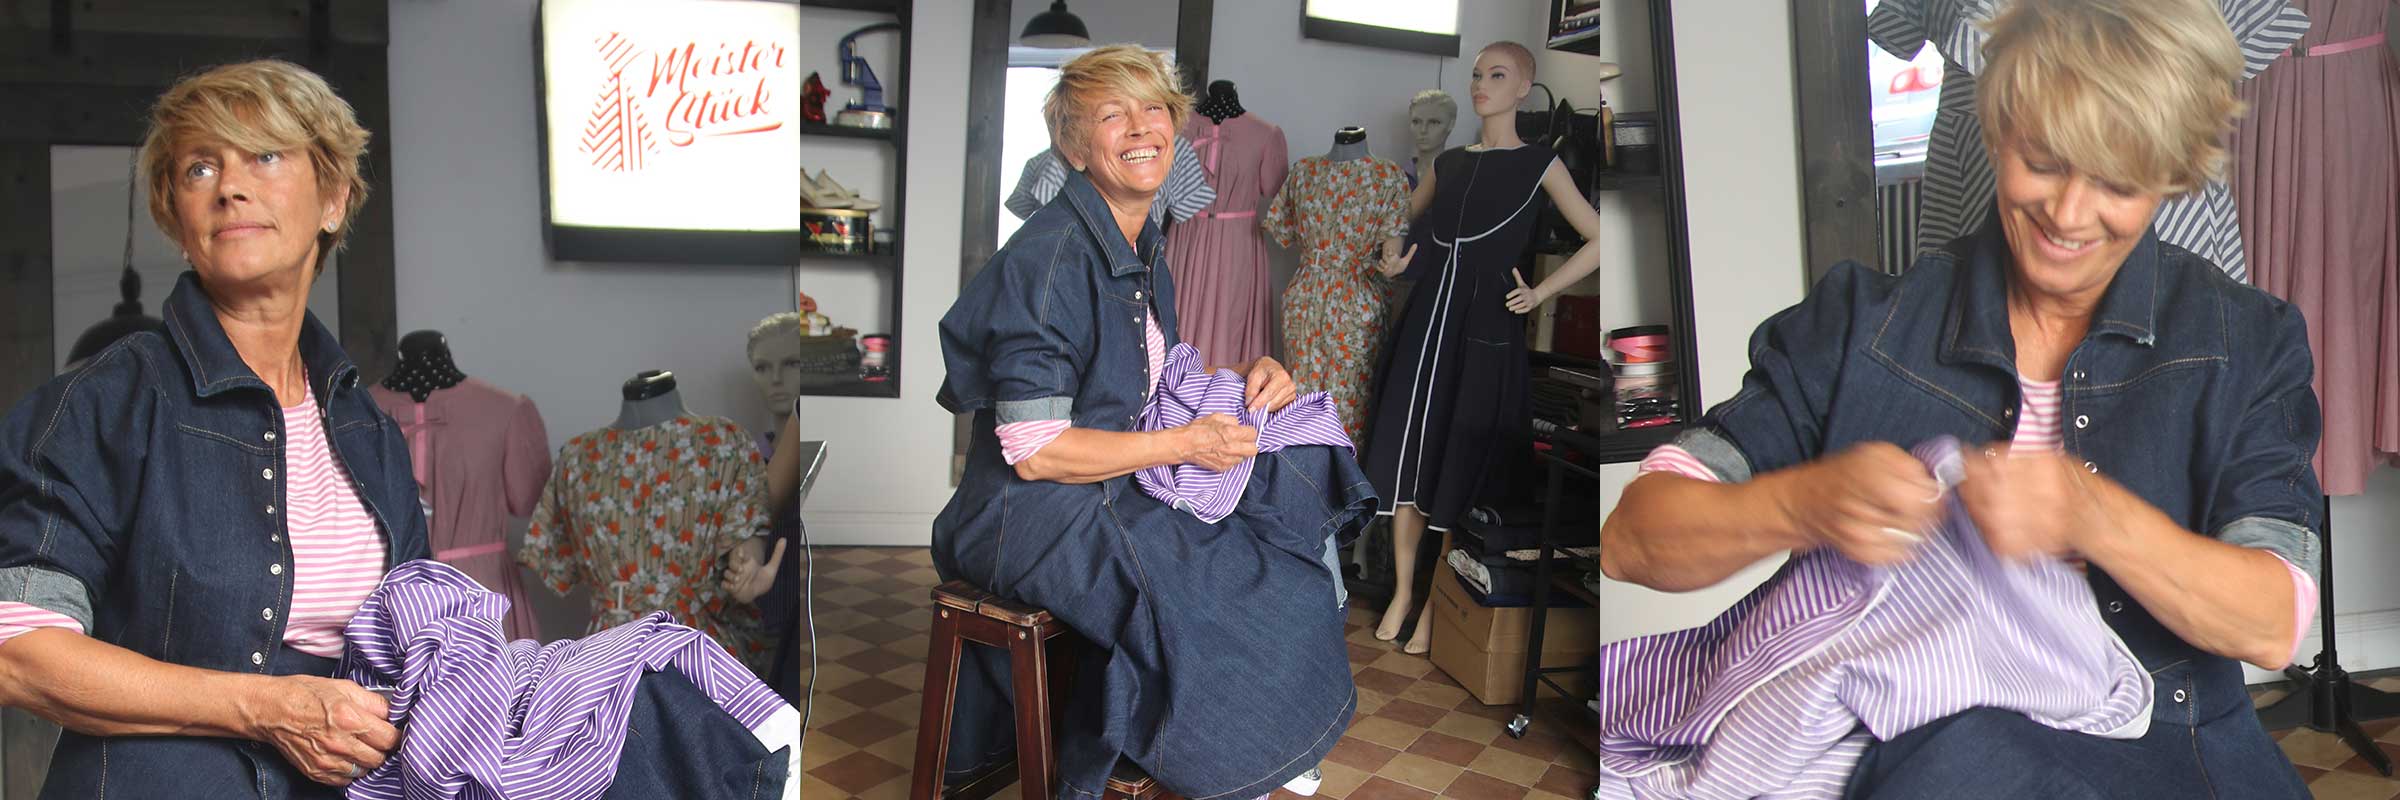 Tina Meister – Atelier für massgeschneiderte Kleidung